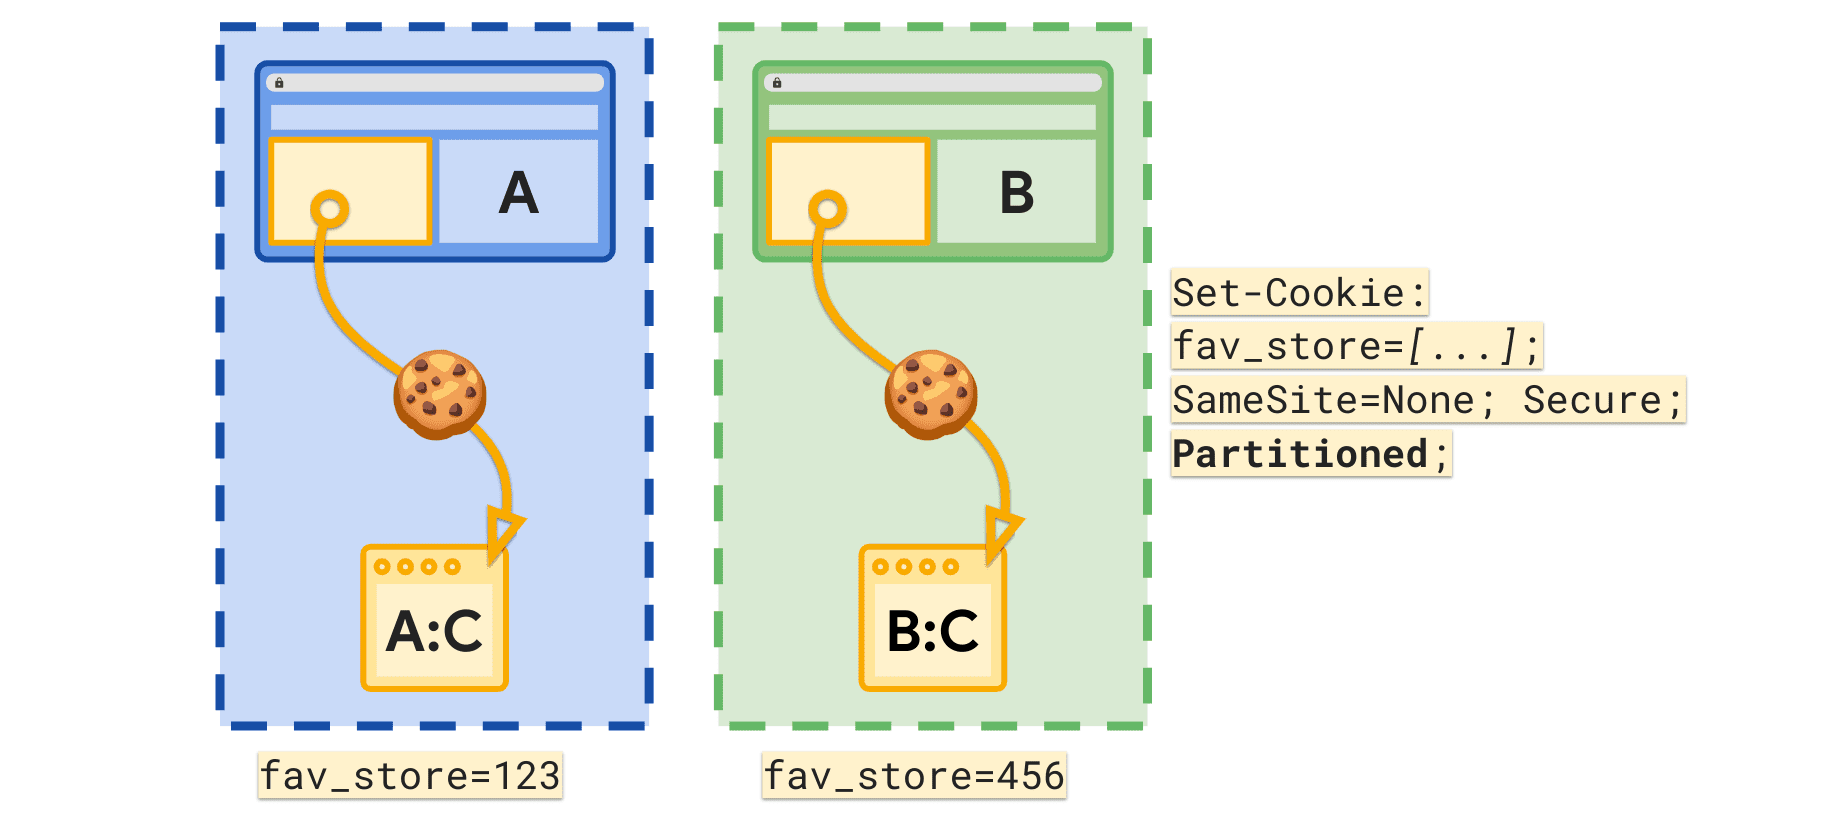 Thuộc tính được phân vùng cho phép đặt cookie fav_store riêng cho mỗi trang web cấp cao nhất.